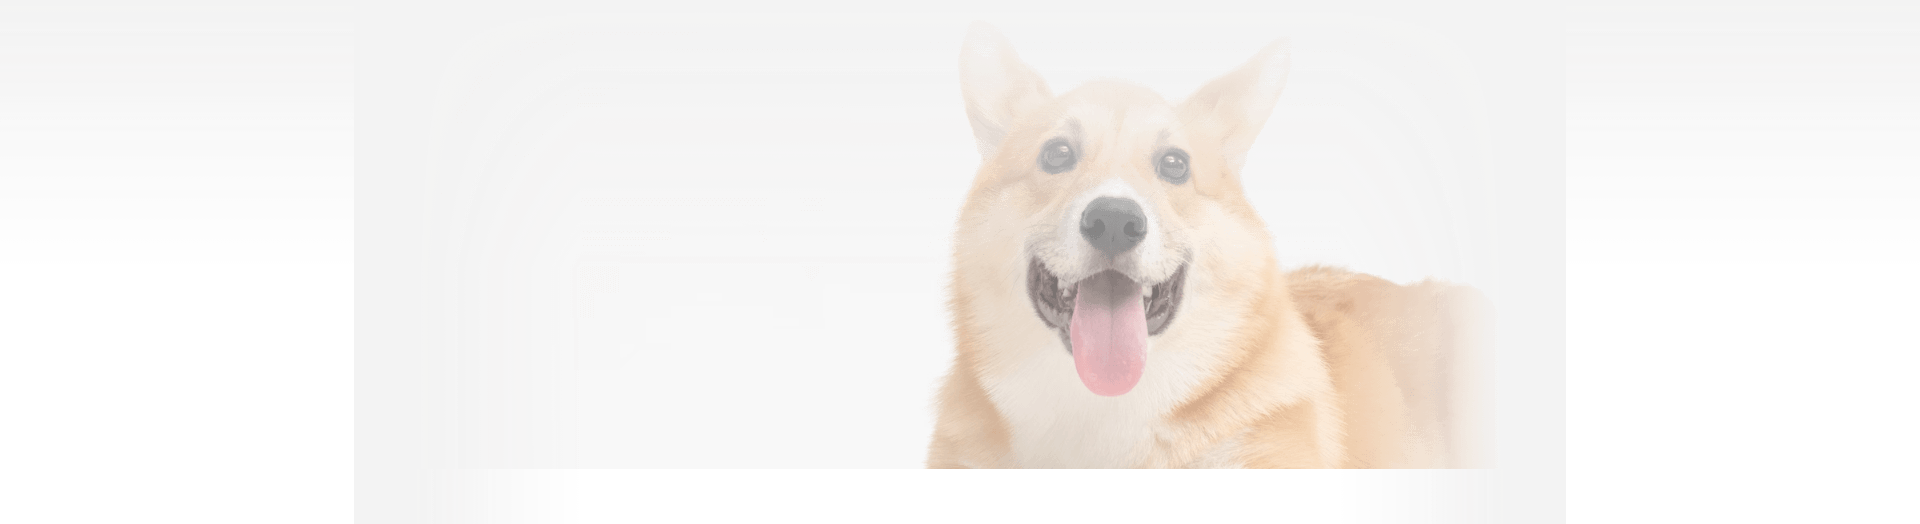 Лечение вывиха челюсти у собак